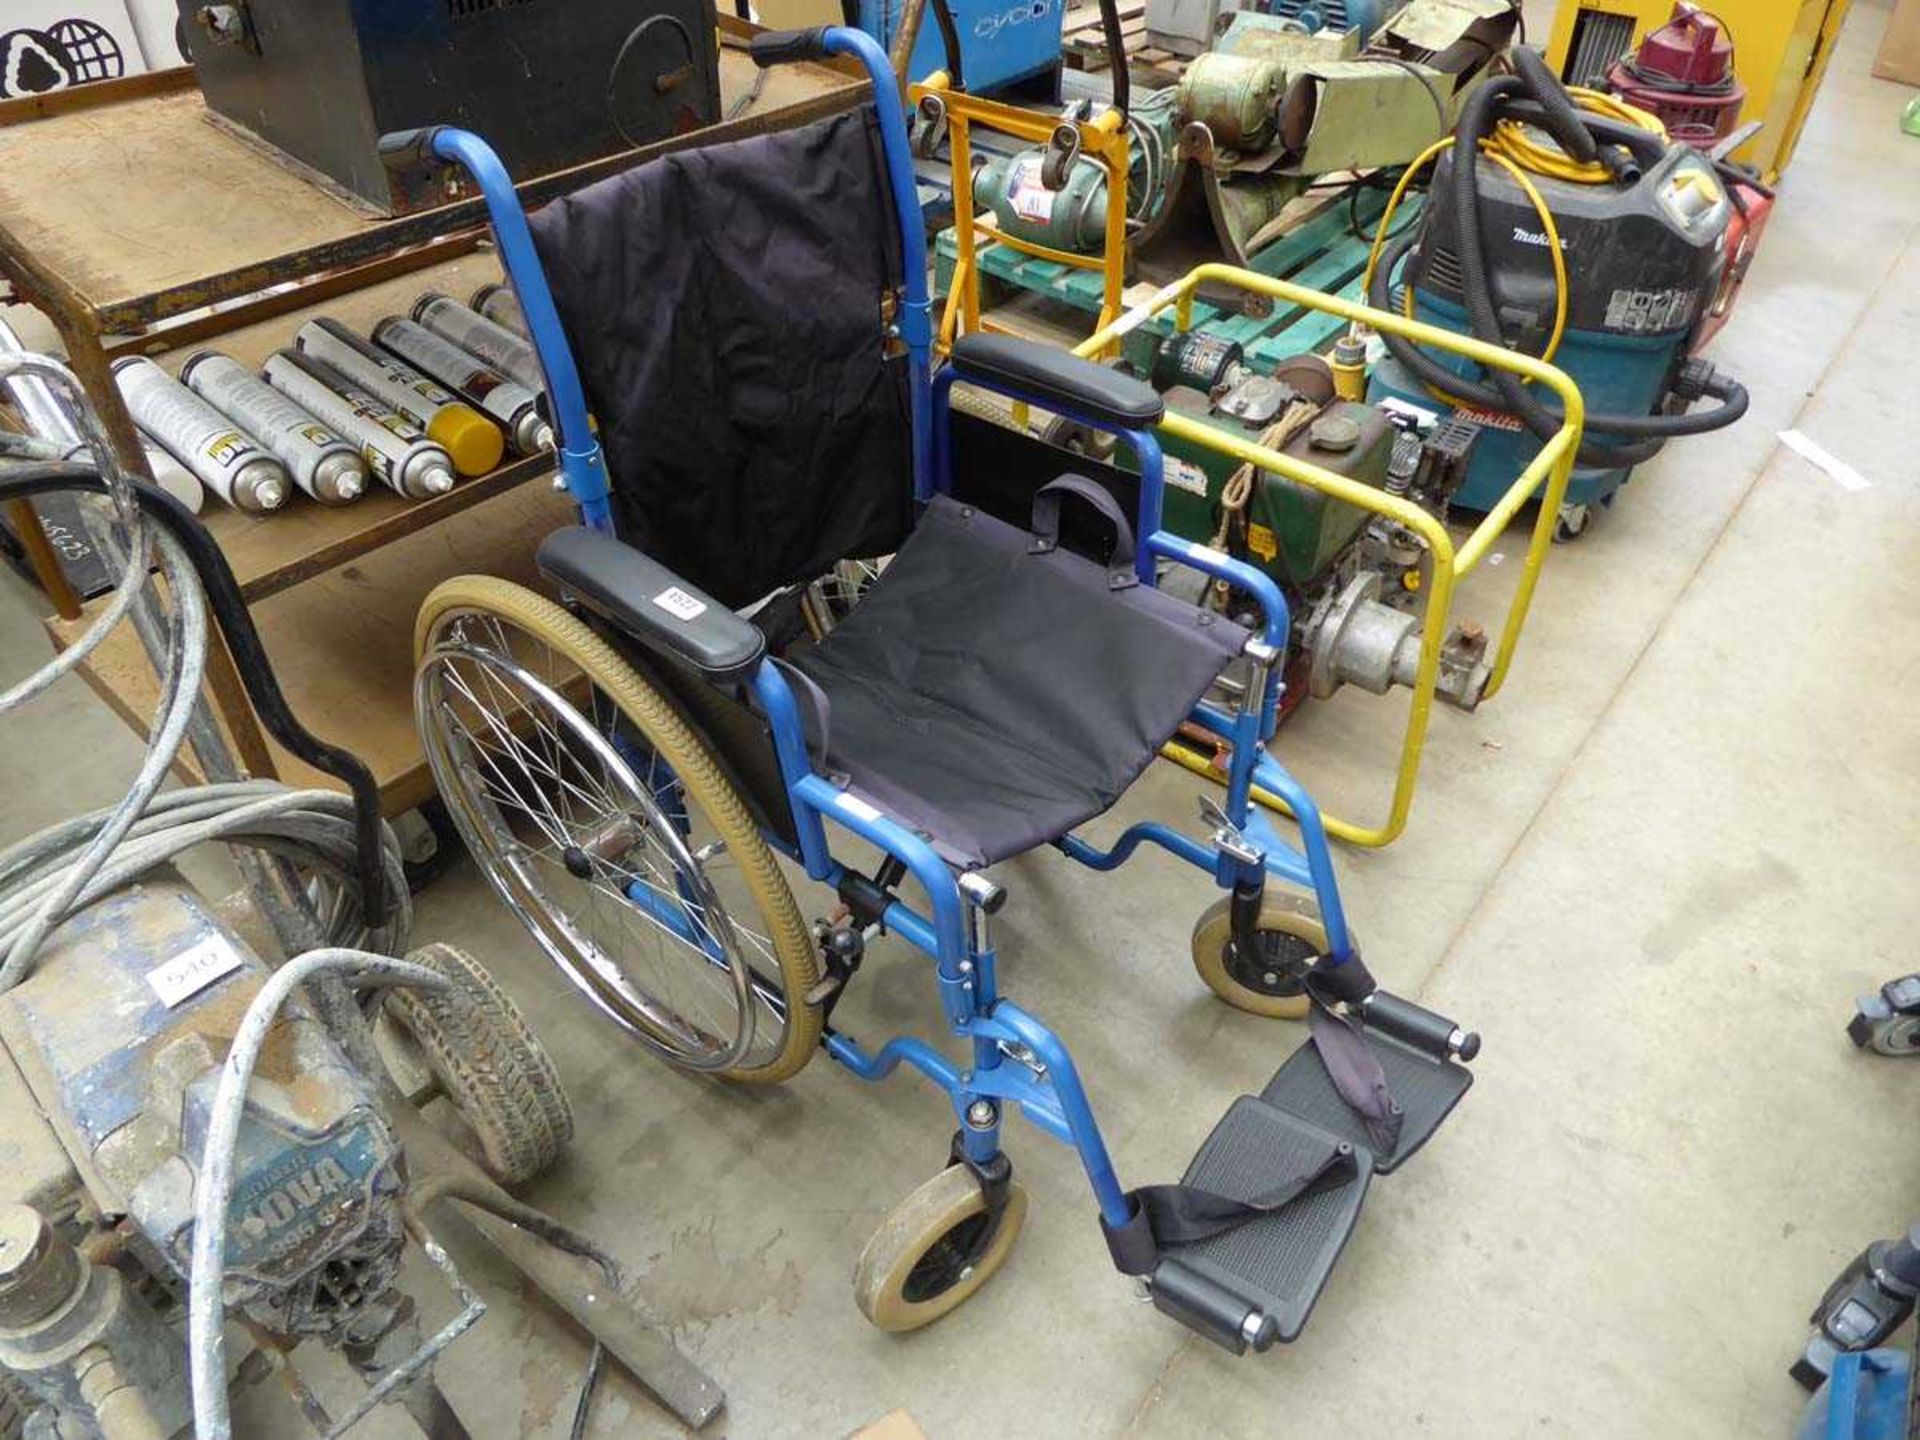 Foldup wheelchair